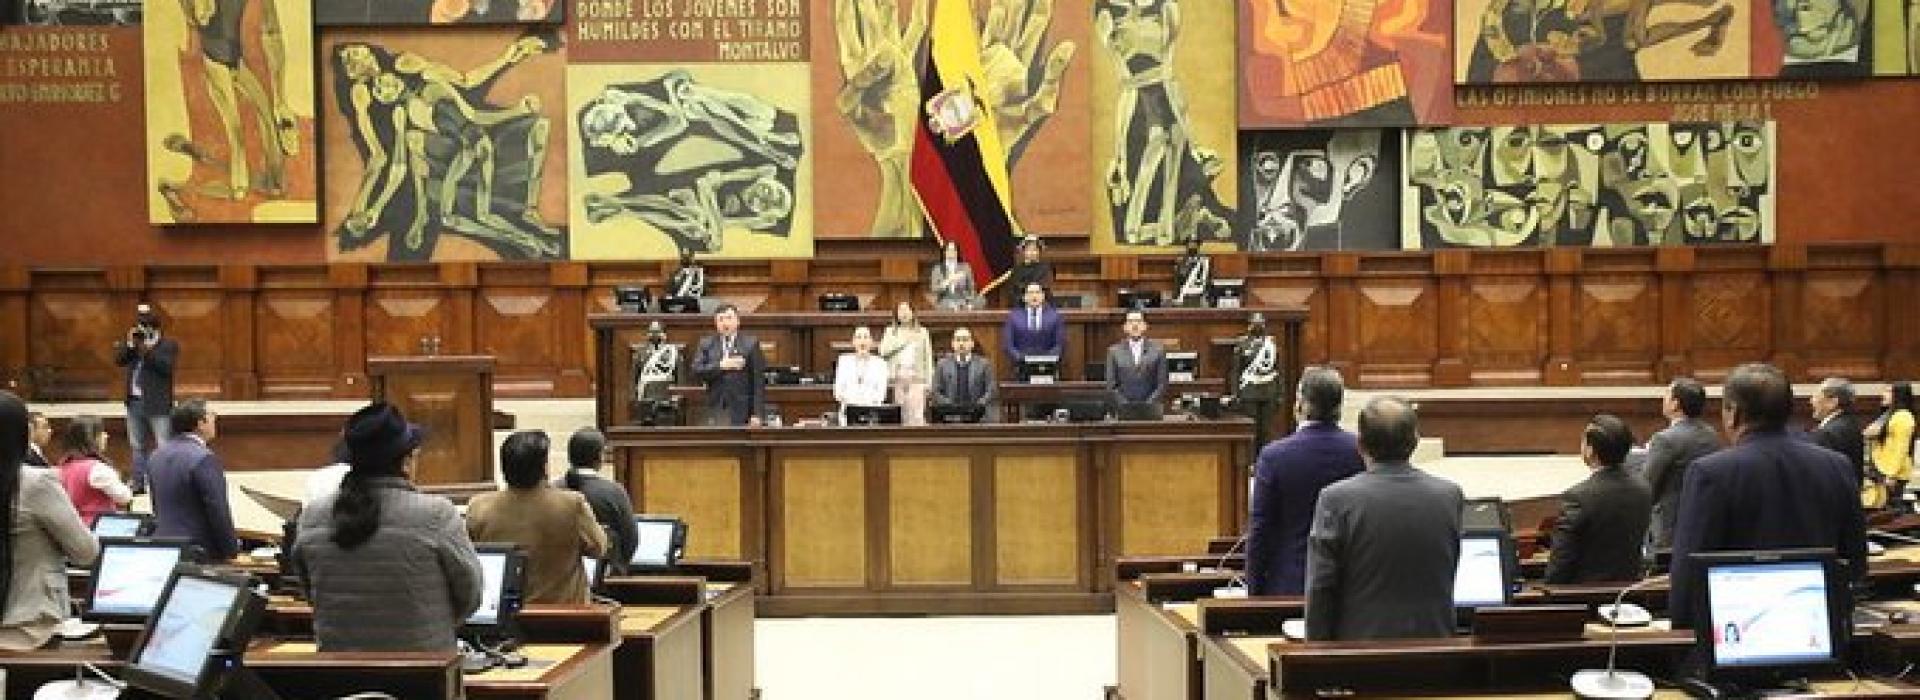 Asamblea Nacional de la República del Ecuador 